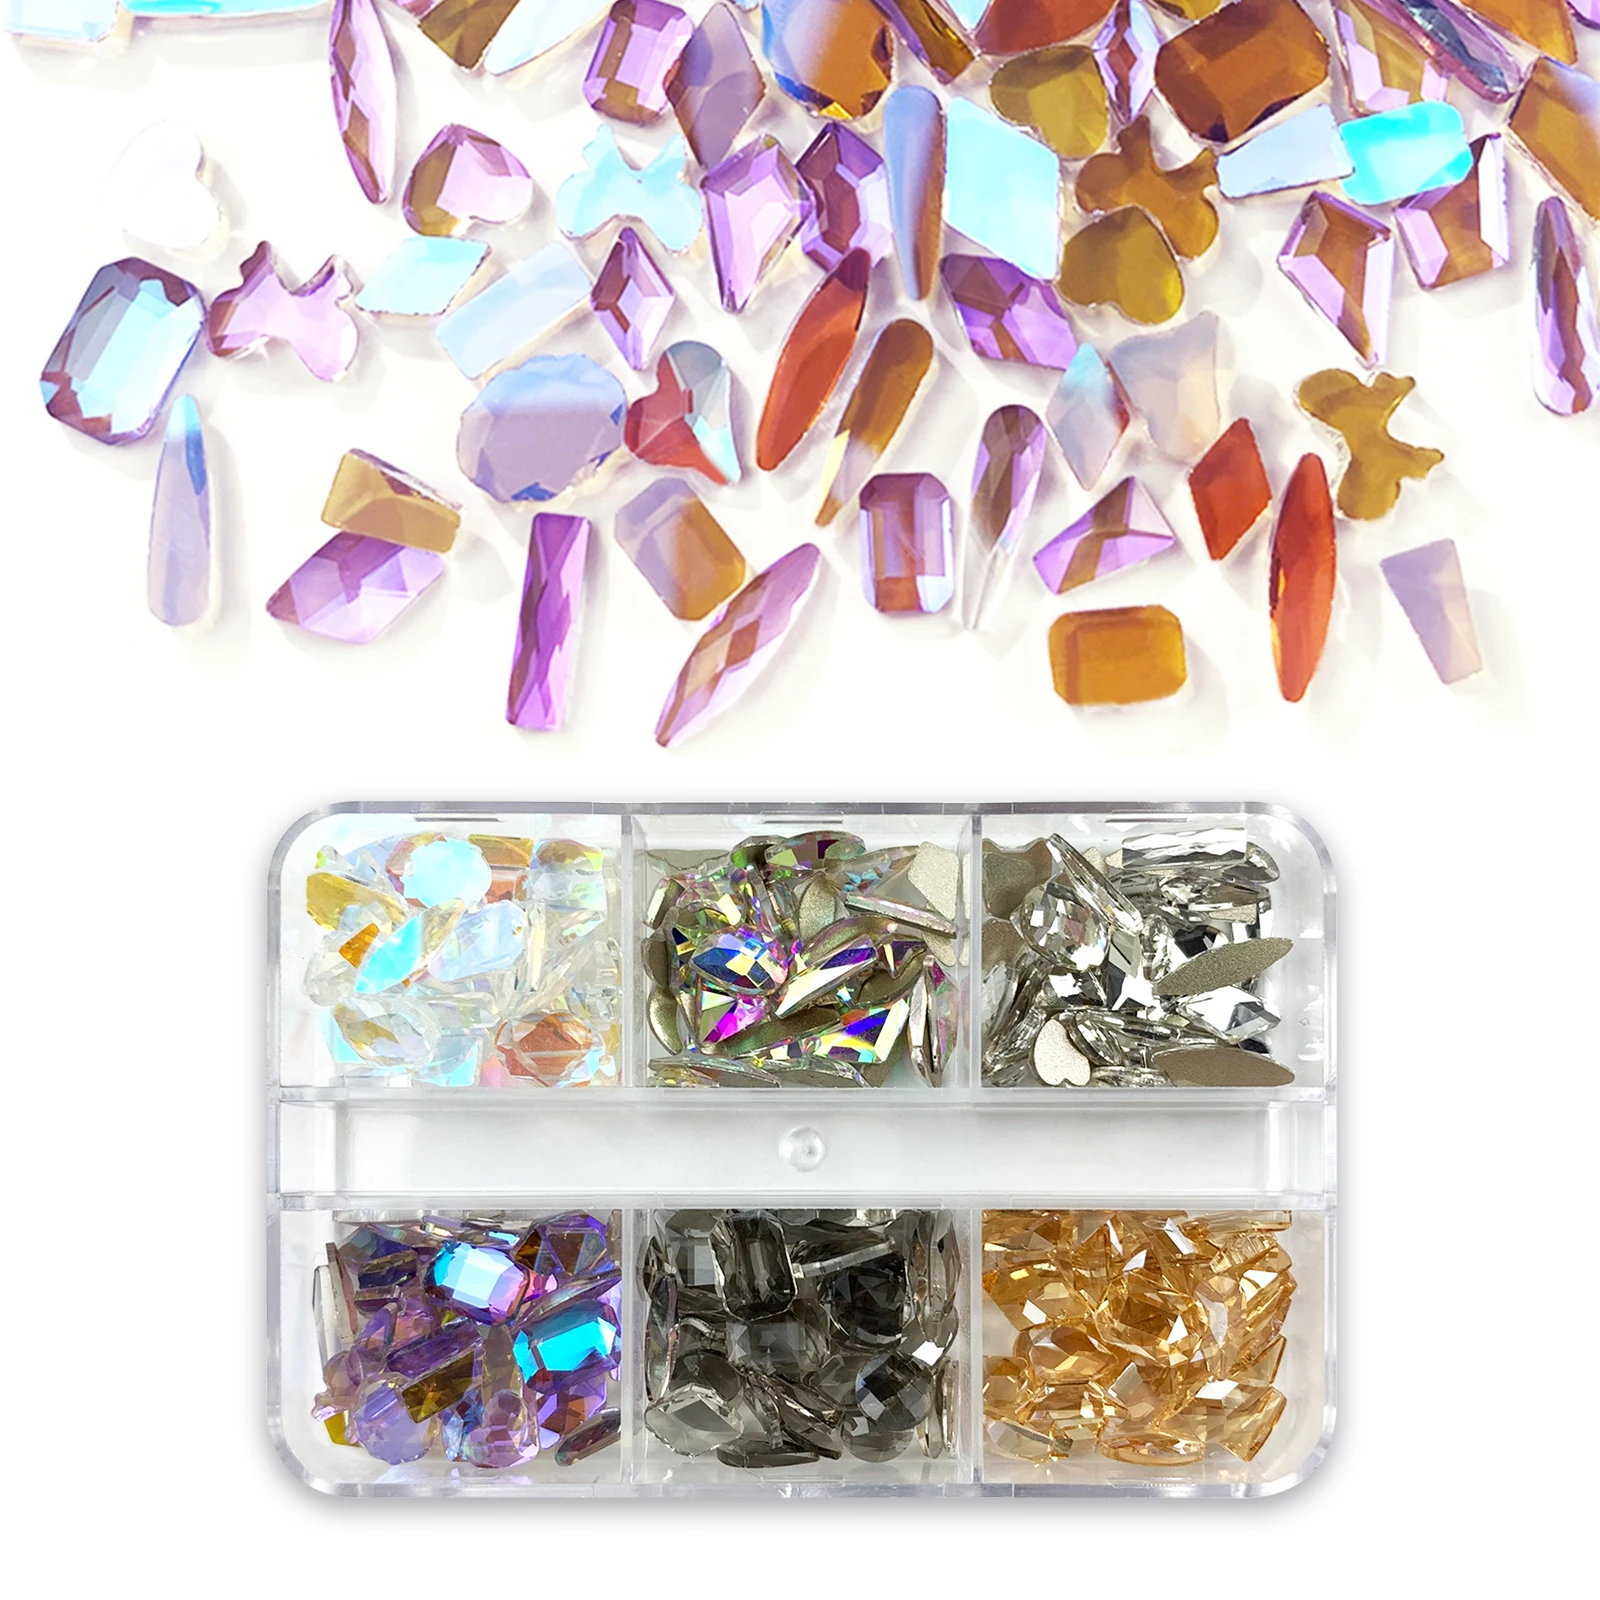 

Алмазный Стразы разных цветов с кристаллами смешанной формы страз стеклянные стразы для 3D искусственных элементов Стразы